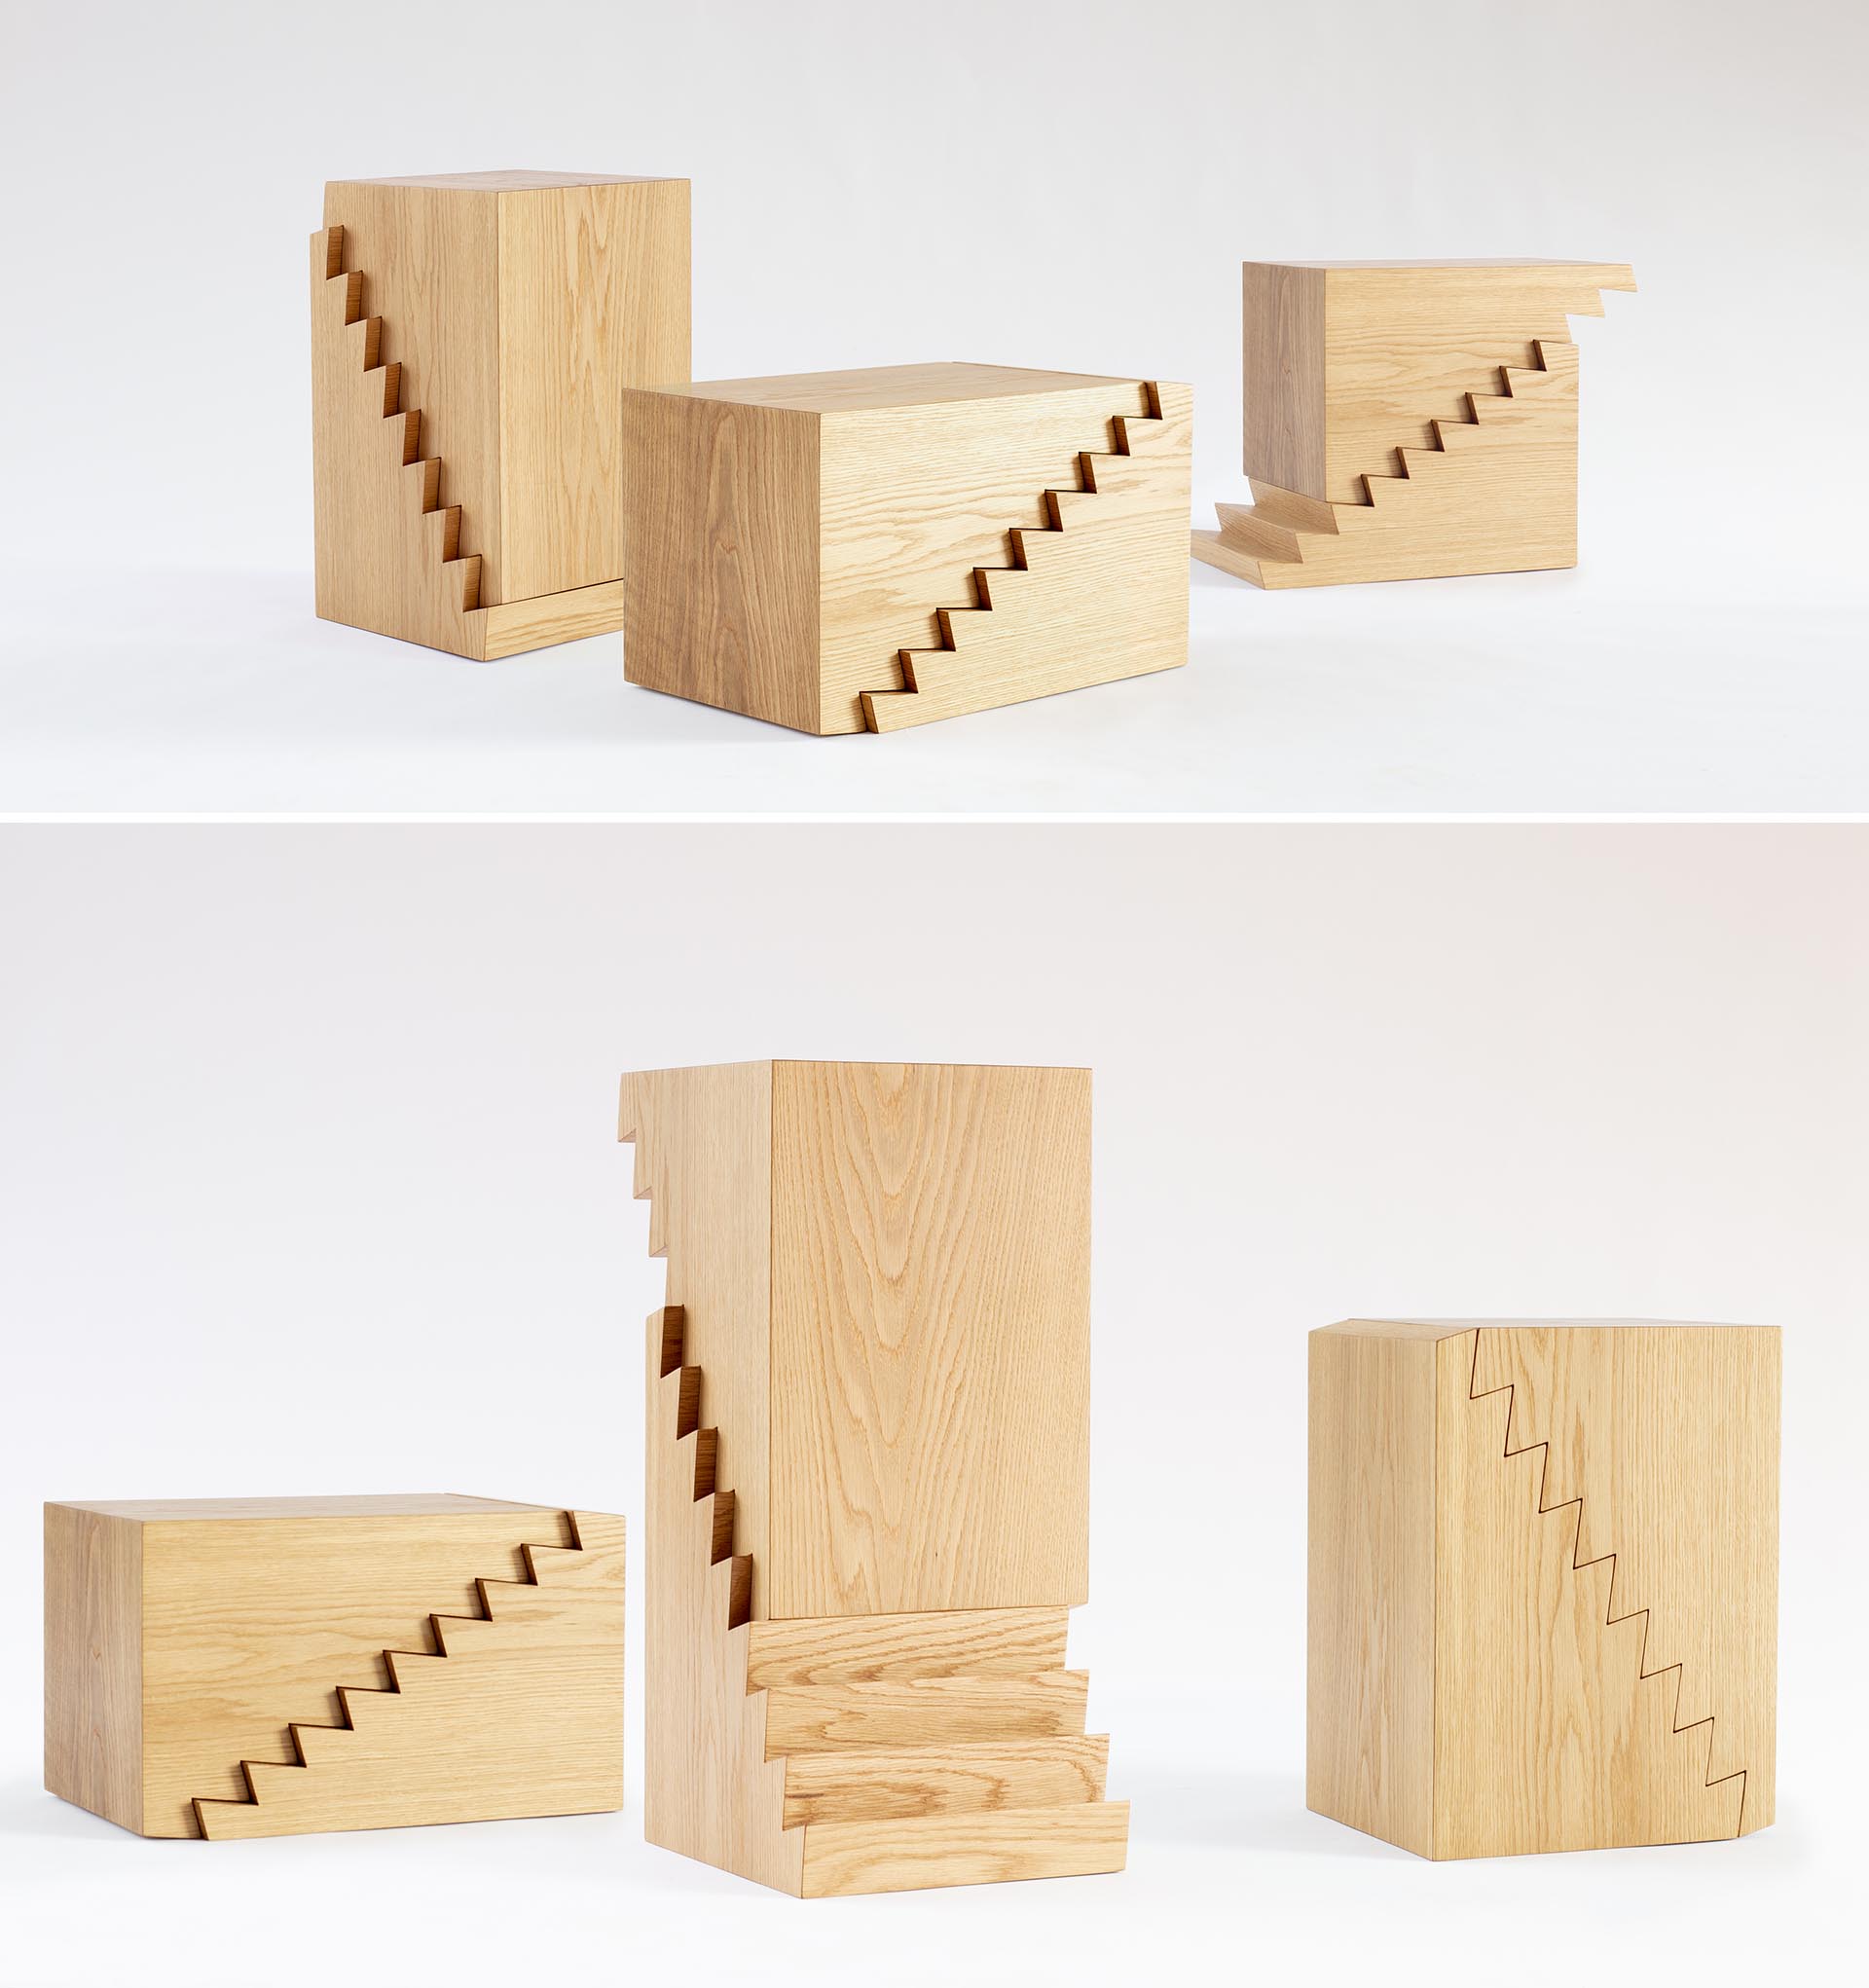 Современный деревянный столик с зубчатым венцом, который также может использоваться как табурет или подставка для ноутбука.